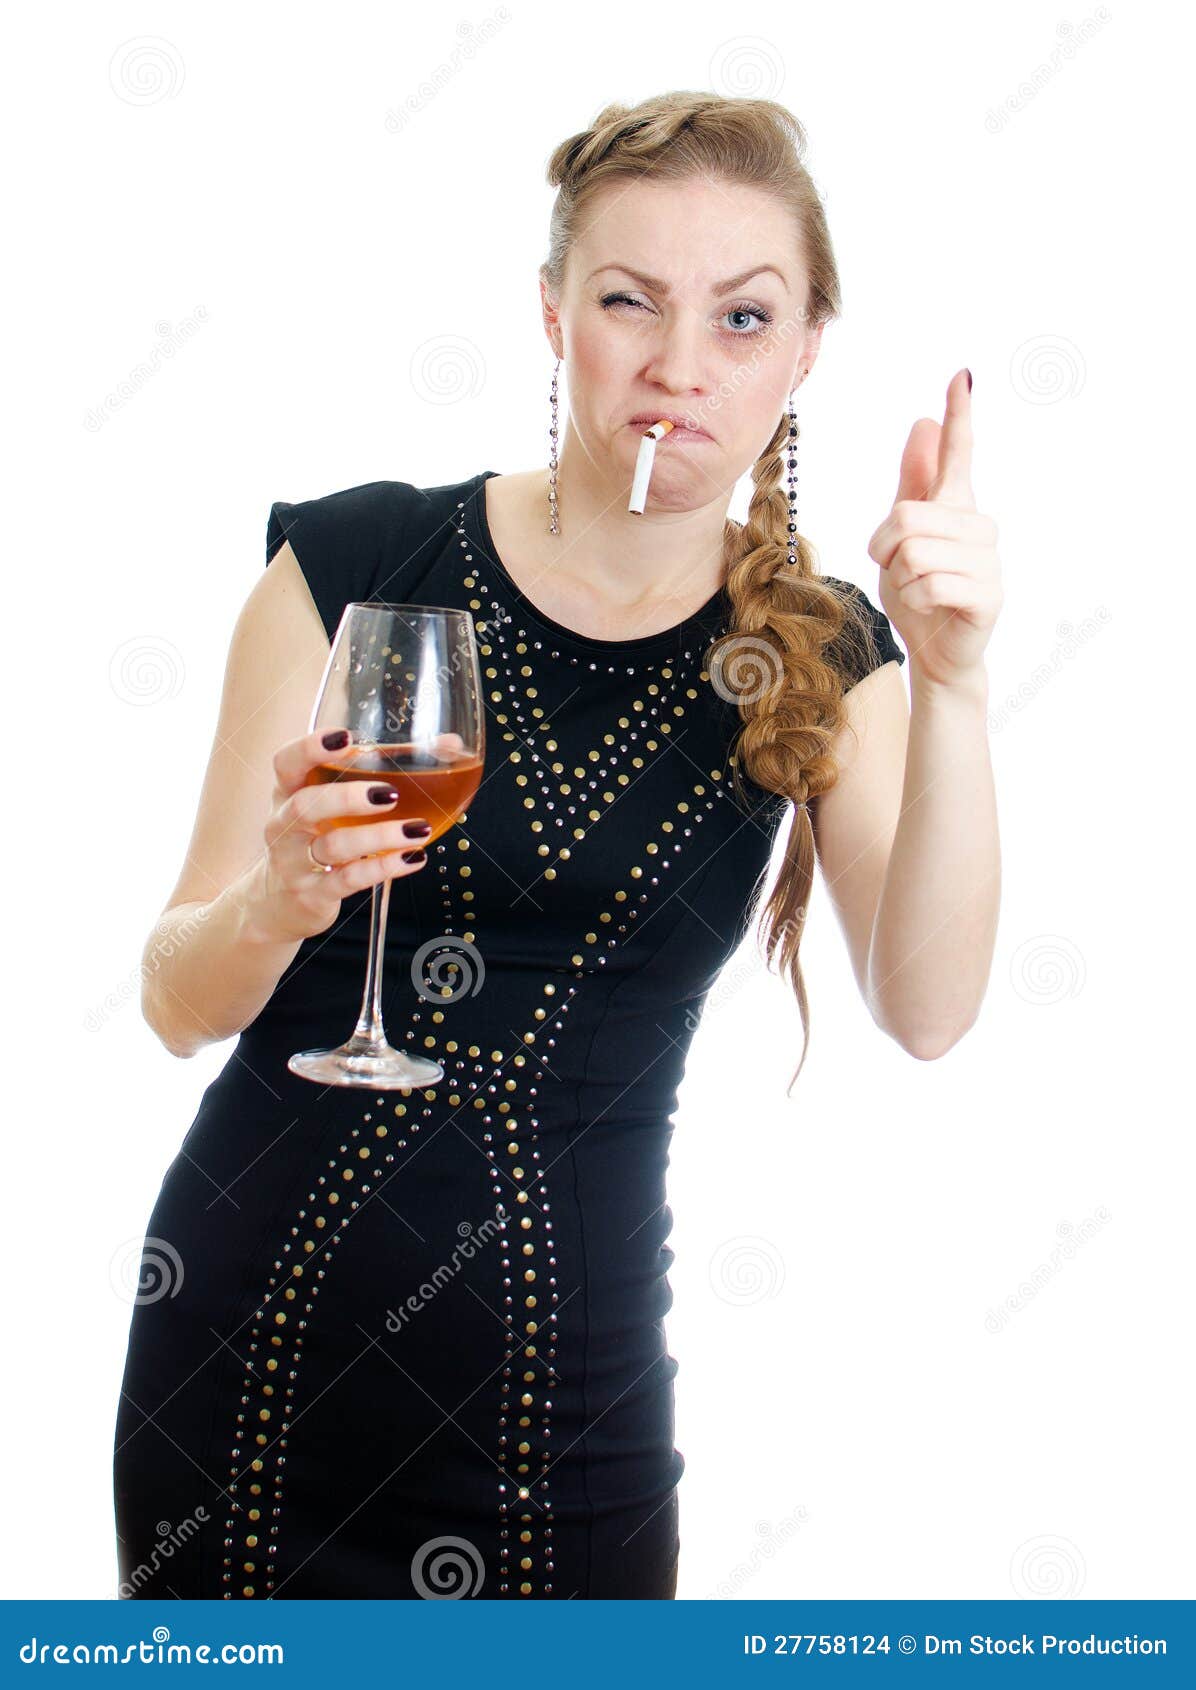 拿着一个whsky瓶的醉酒的拉丁妇女 库存图片. 图片 包括有 沮丧, 女性, 慢性, 醉酒, 从属, 酒精 - 32773151